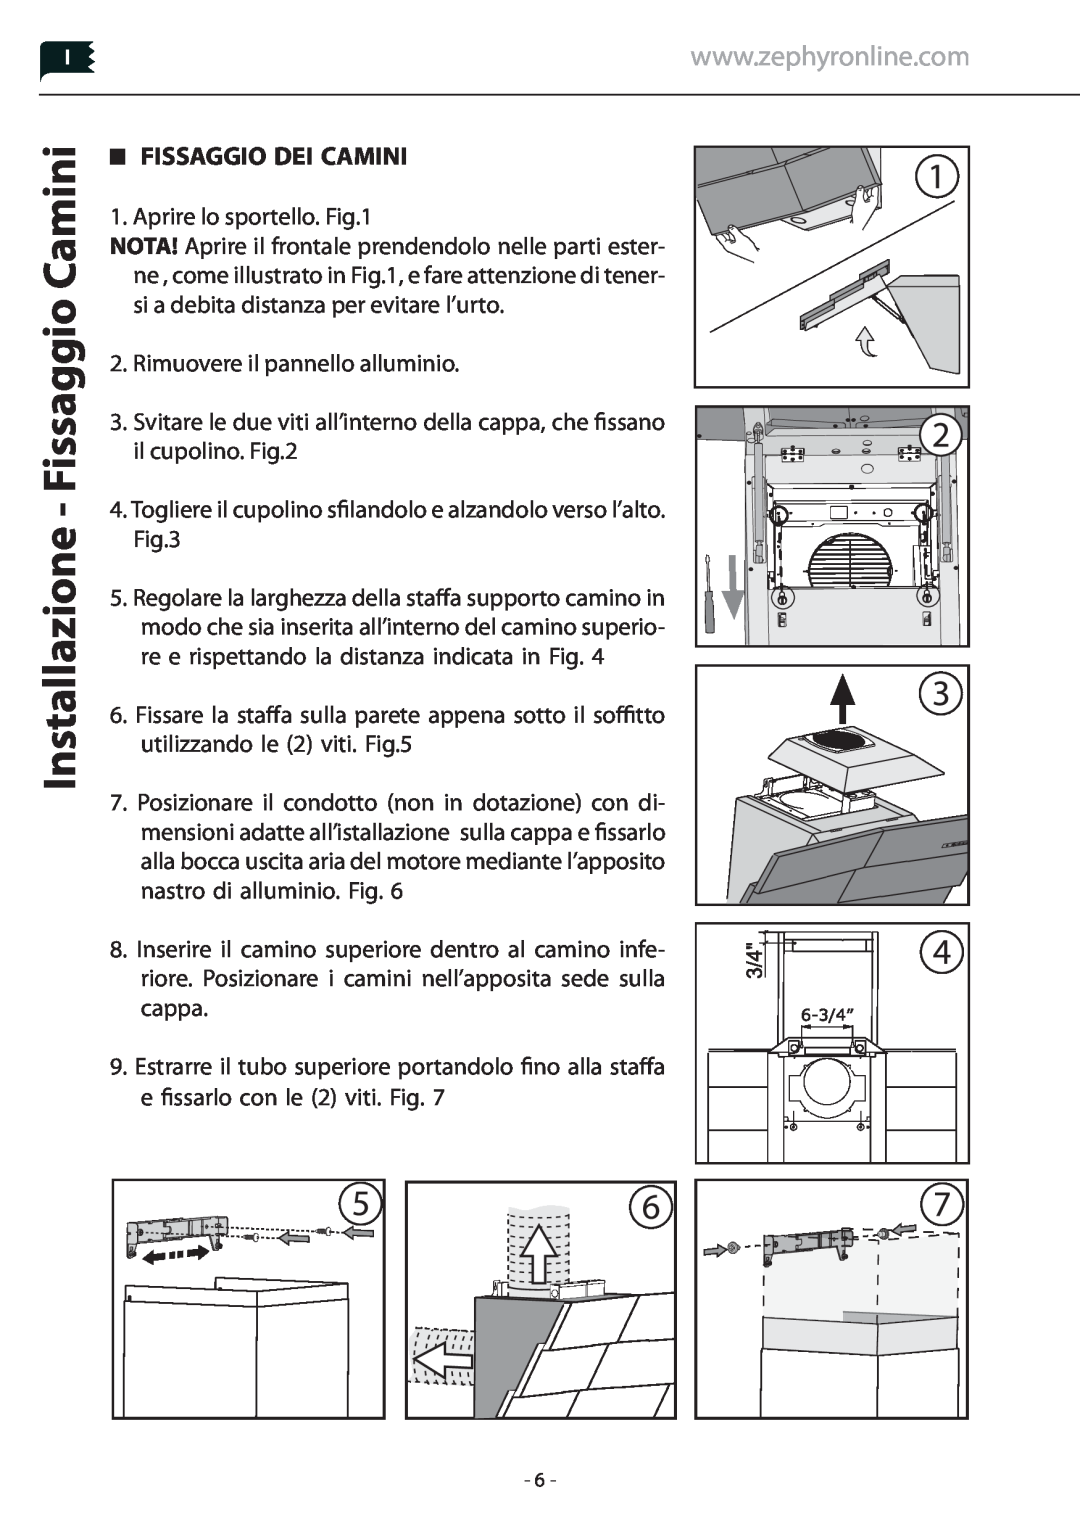 Zephyr Z1C-01TI, Z1C-00TI manual Installazione - Fissaggio Camini, Fissaggio Dei Camini 